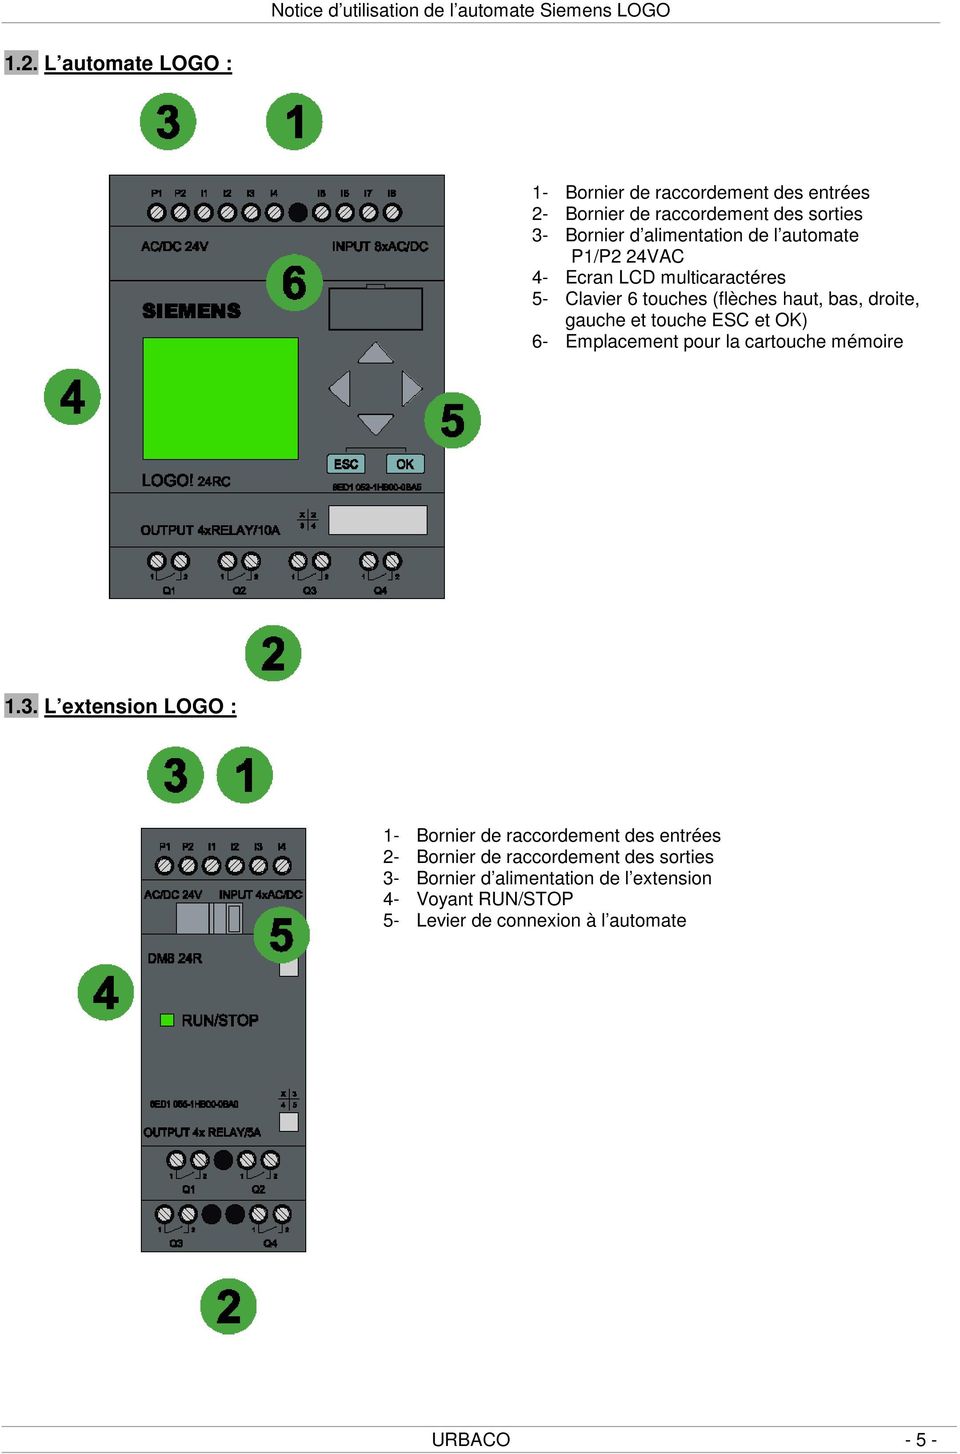 P1/P2 24VAC 4- Ecran LCD multicaractéres 5- Clavier 6 touches (flèches haut, bas, droite, gauche et touche ESC et OK) 6- Emplacement pour